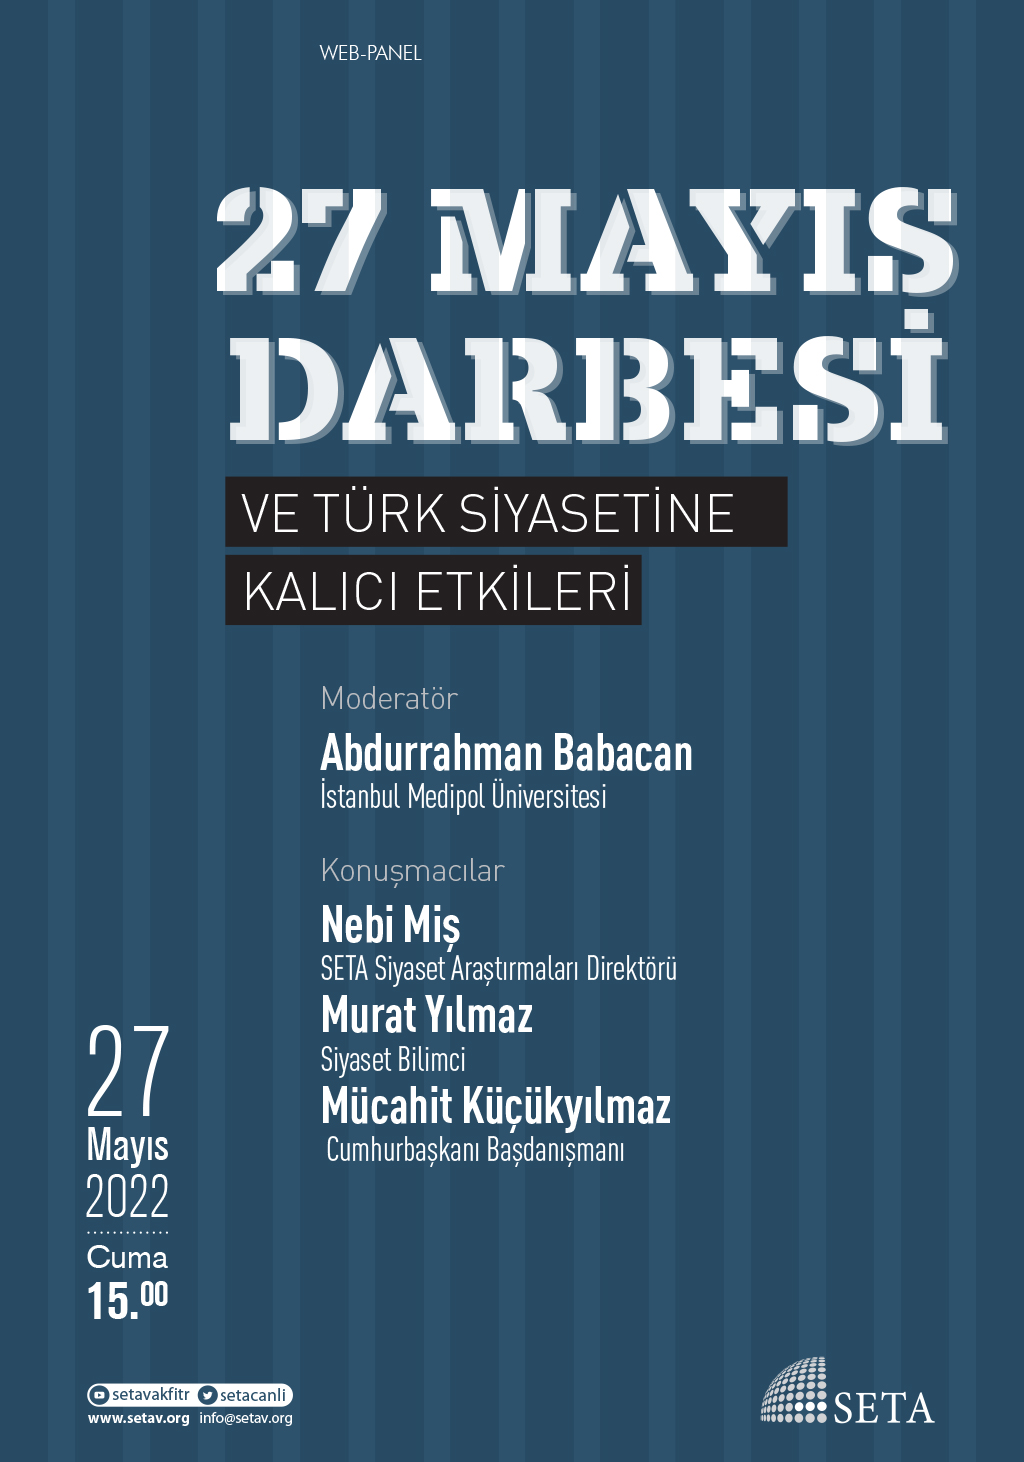 Web Panel: 27 Mayıs Darbesi ve Türk Siyasetine Kalıcı Etkileri